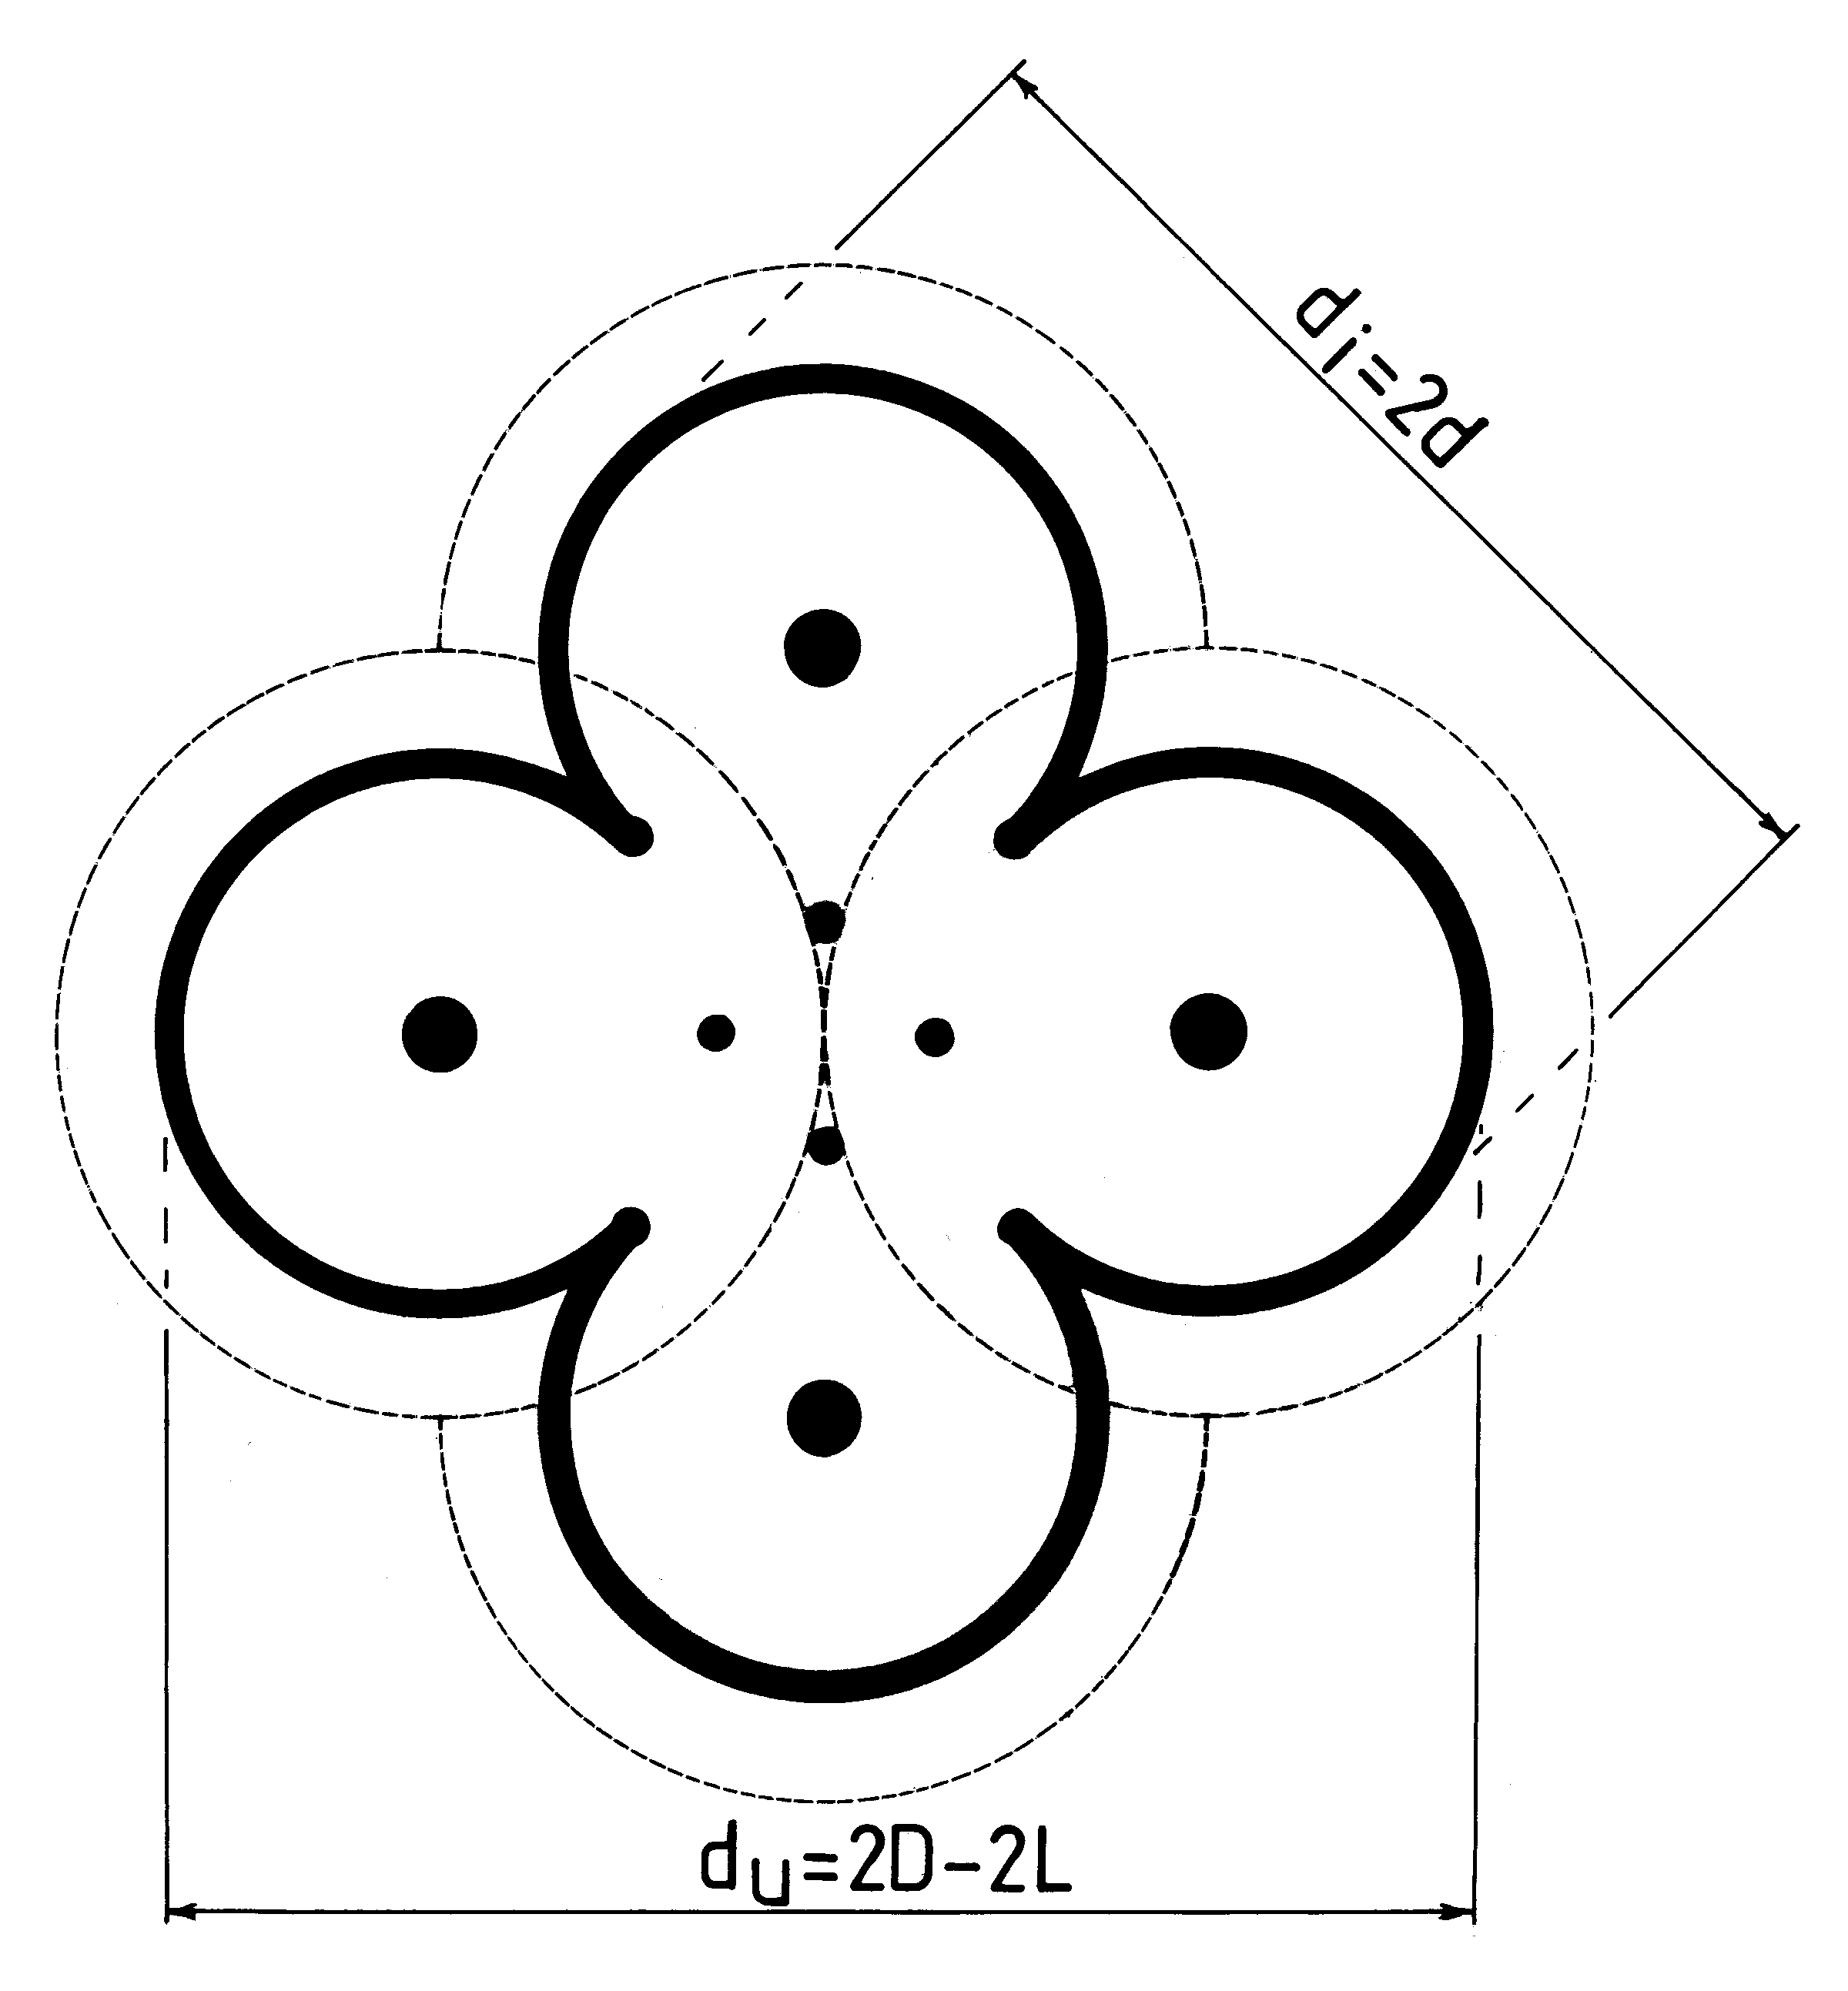 Fig./Rys. O2(b) in/w [1/4]